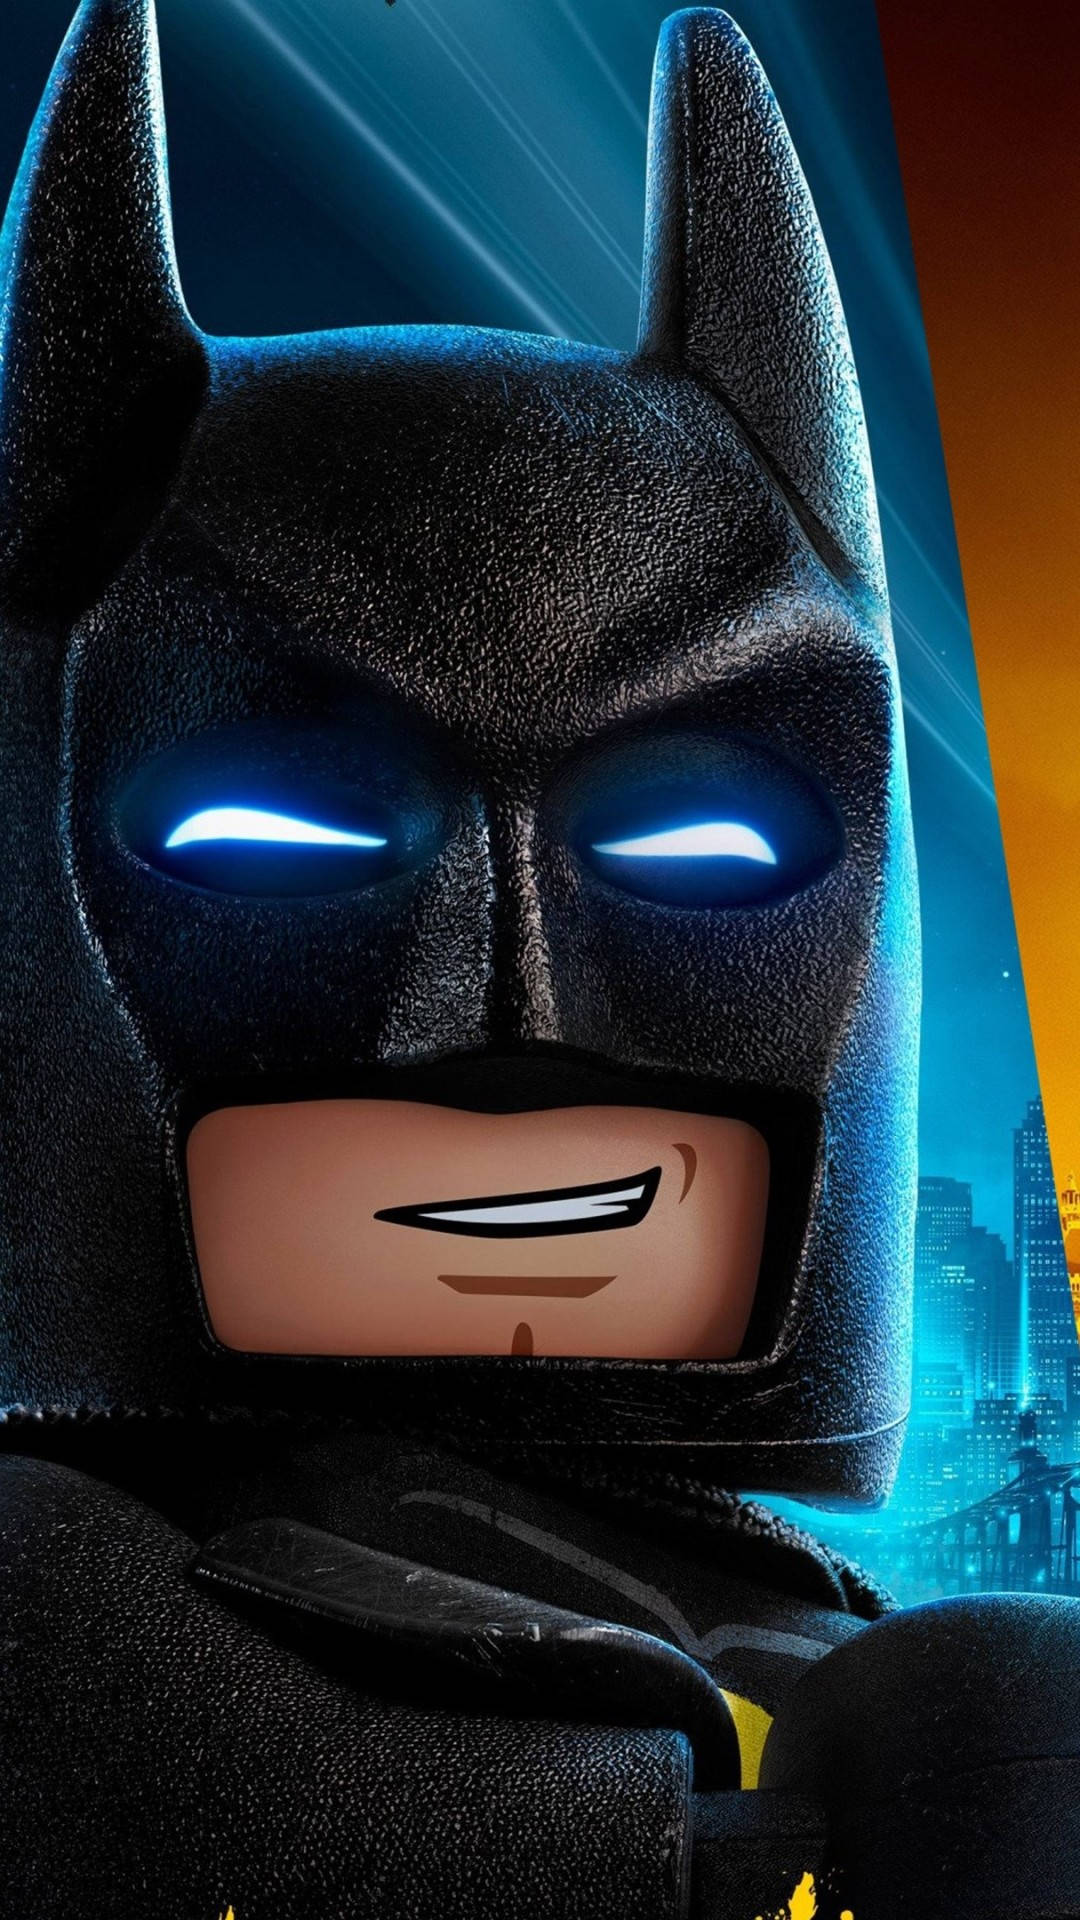 Lego Batman lego batman HD phone wallpaper  Peakpx